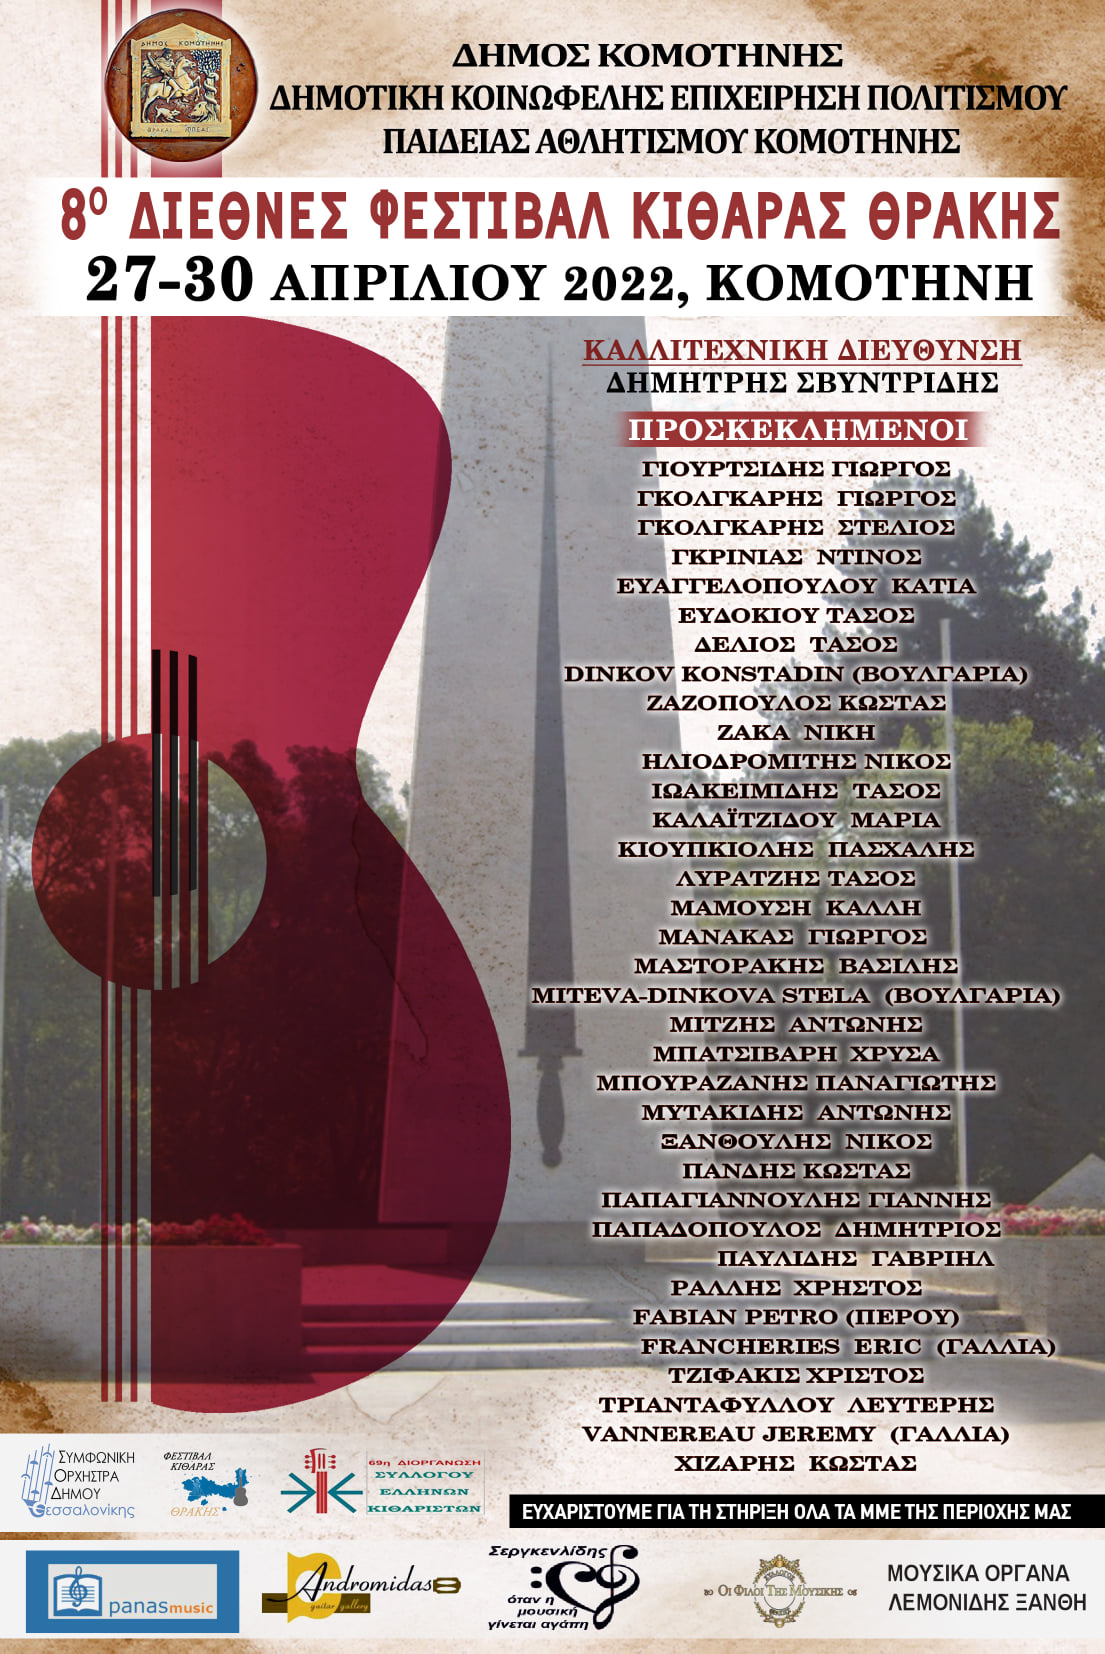 Με τη μεγάλη συναυλία της Συμφωνικής Ορχήστρας του Δήμου Θεσσαλονίκης, ξεκινά την Τετάρτη 27 Απριλίου, στο Μέγαρο Μουσικής Κομοτηνής, το 8ο Διεθνές Φεστιβάλ Κιθάρας Θράκης.